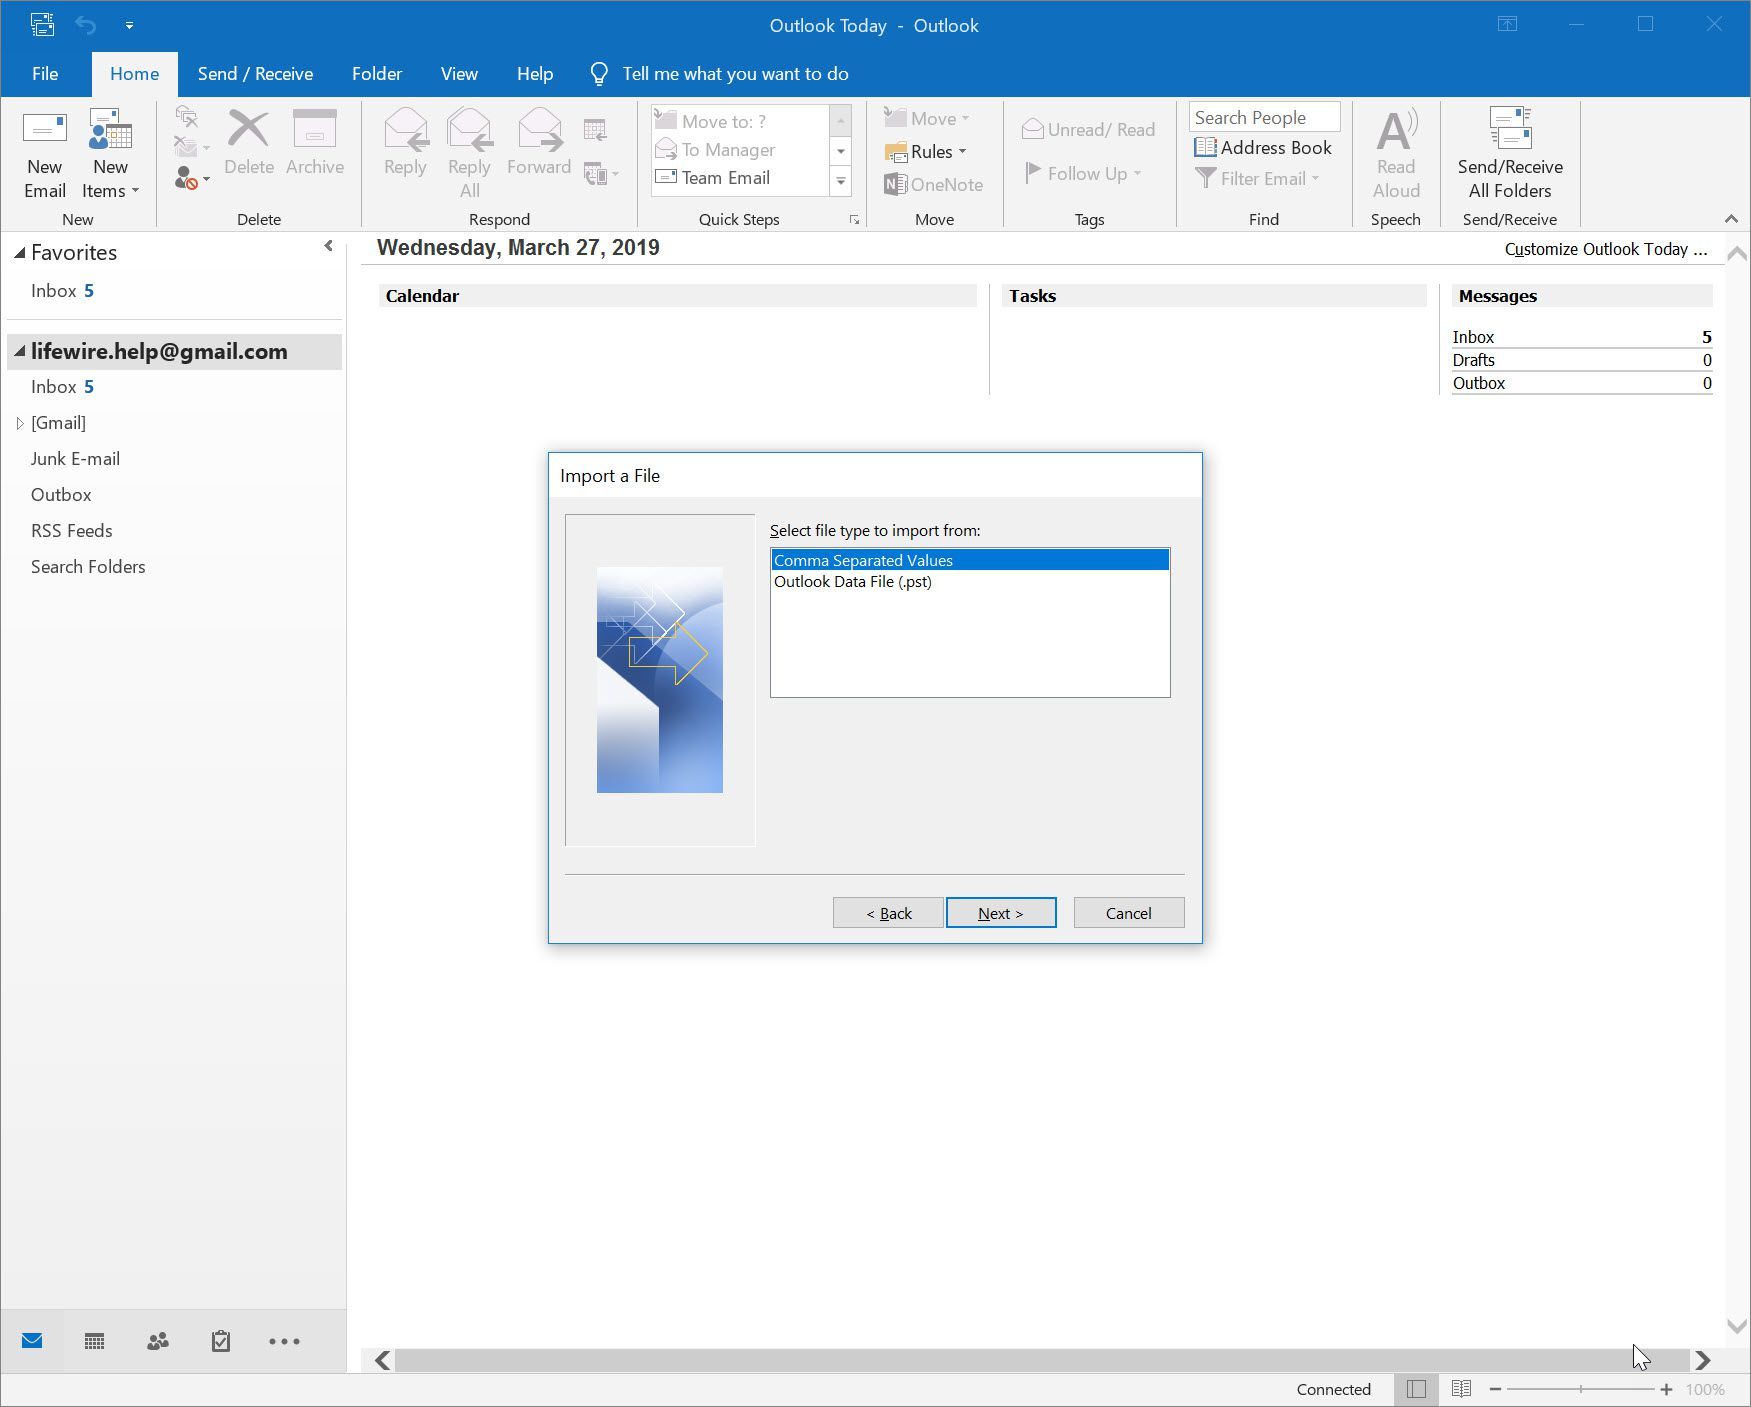 Outlook 2016 Импорт файла с выбранными значениями, разделенными запятыми